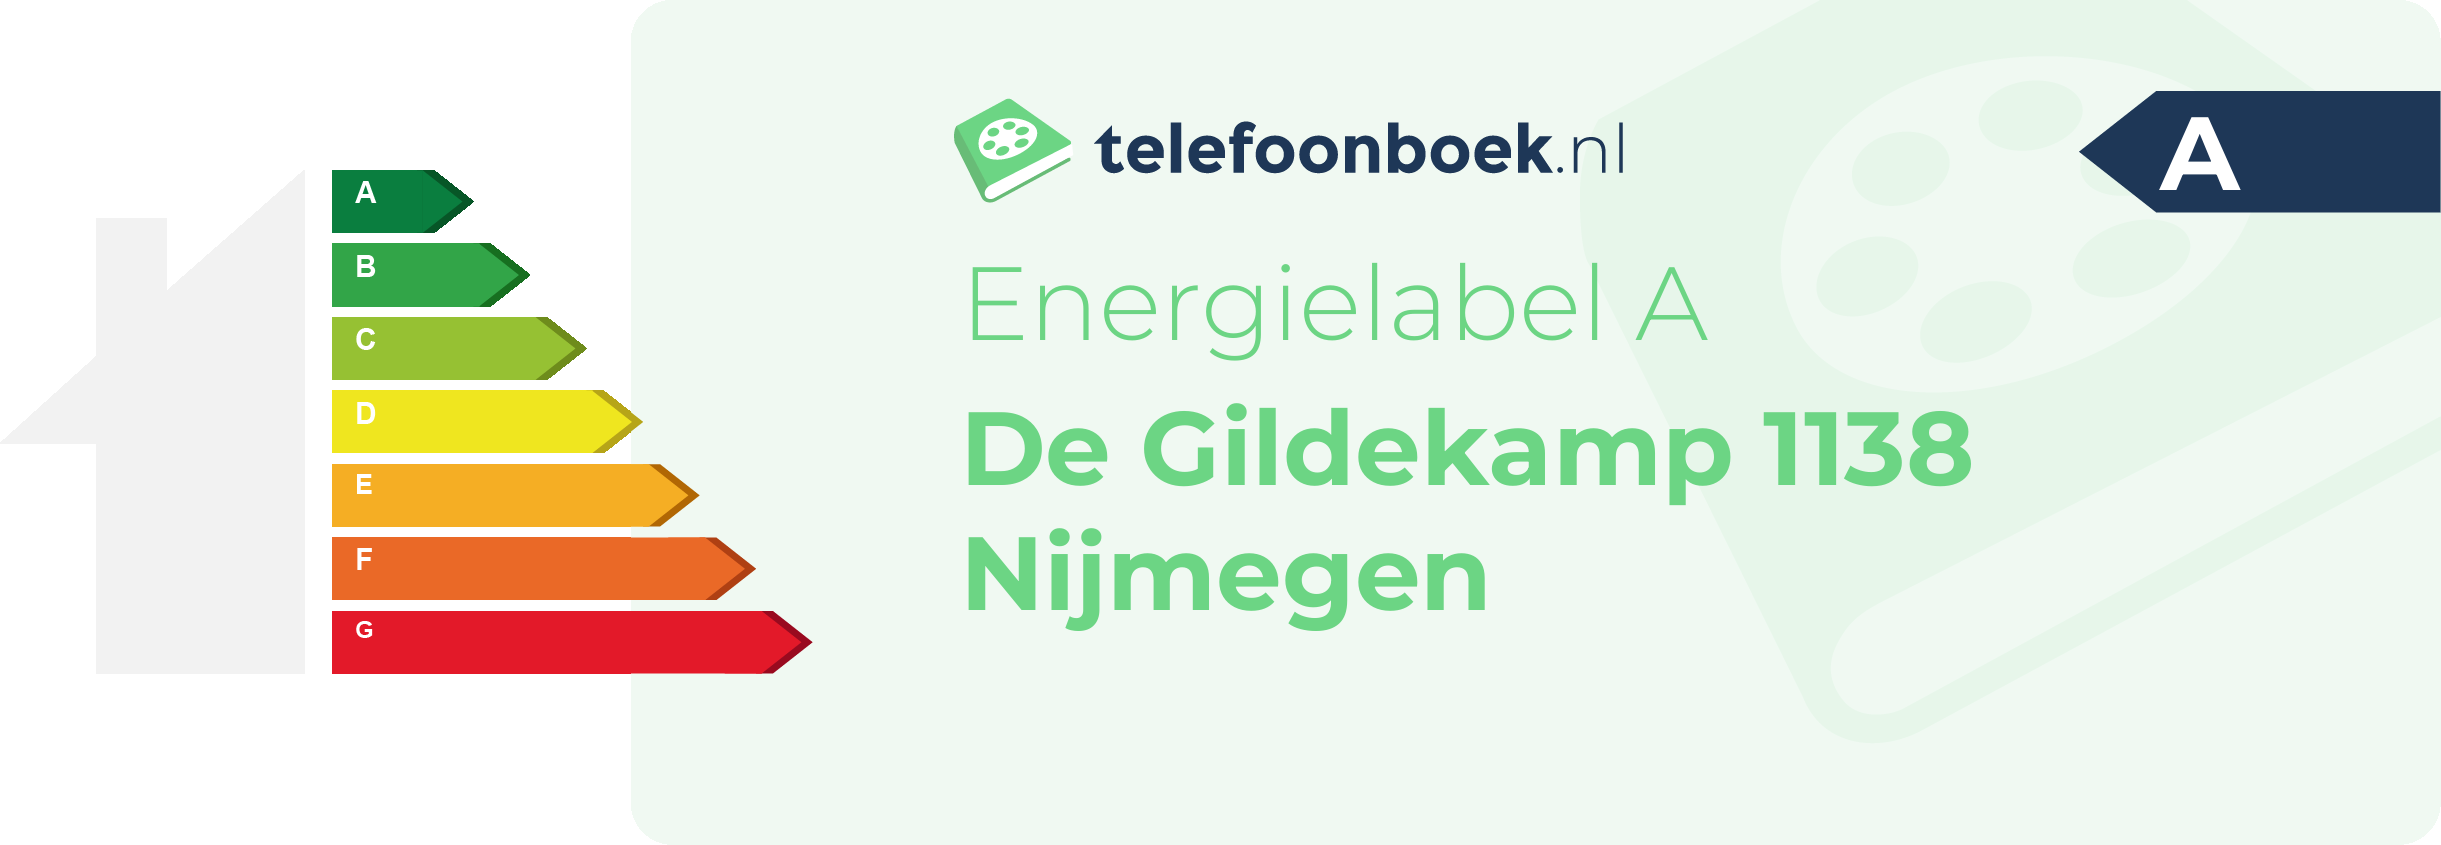 Energielabel De Gildekamp 1138 Nijmegen